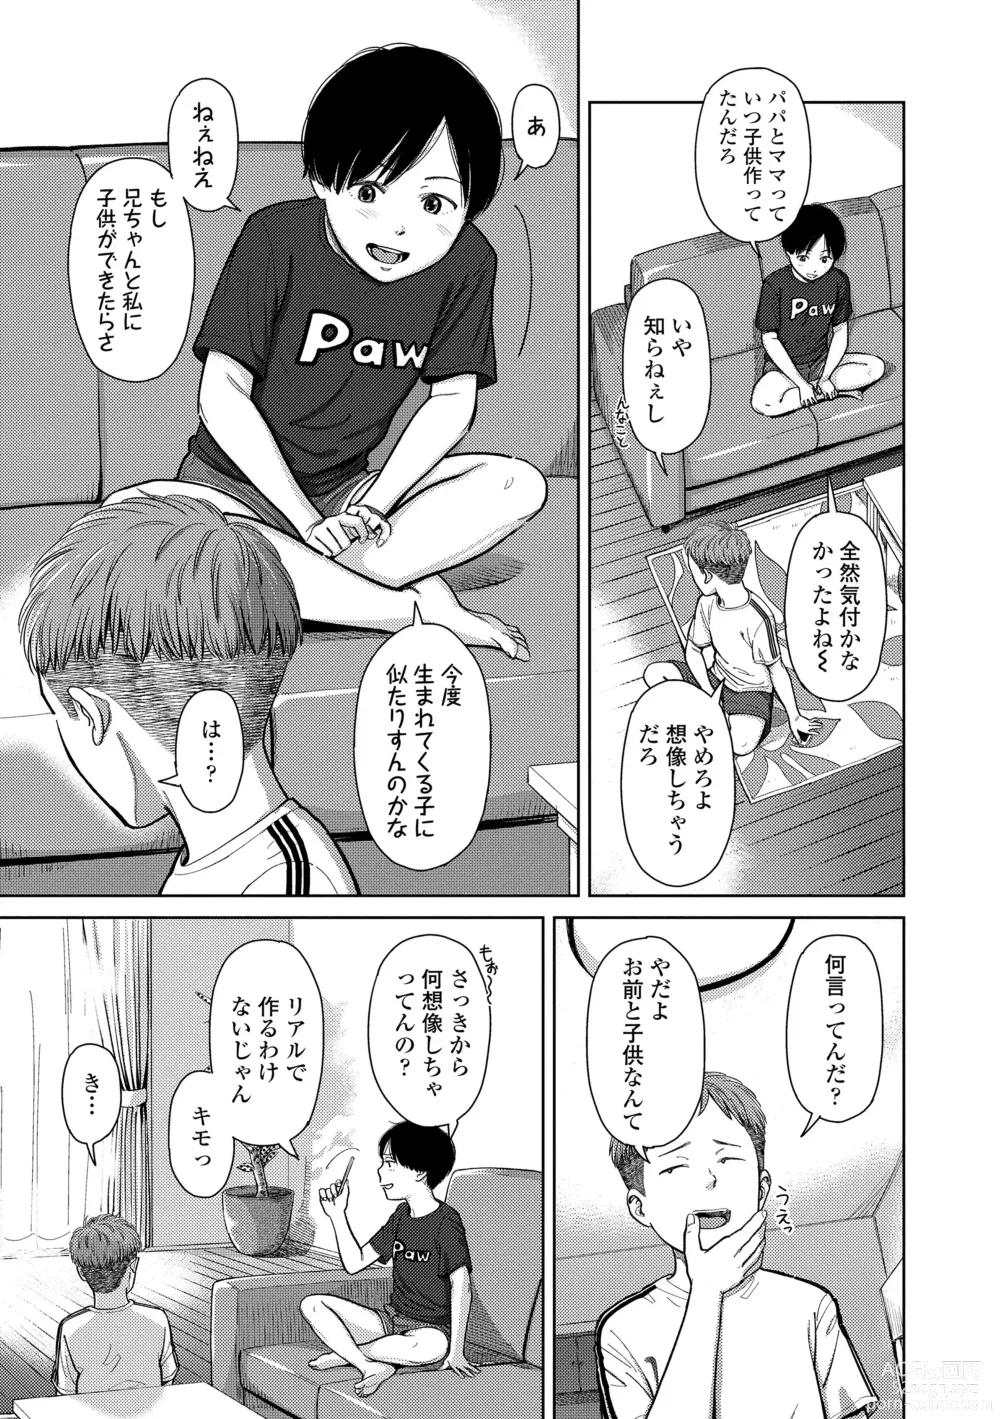 Page 7 of manga Over Kill